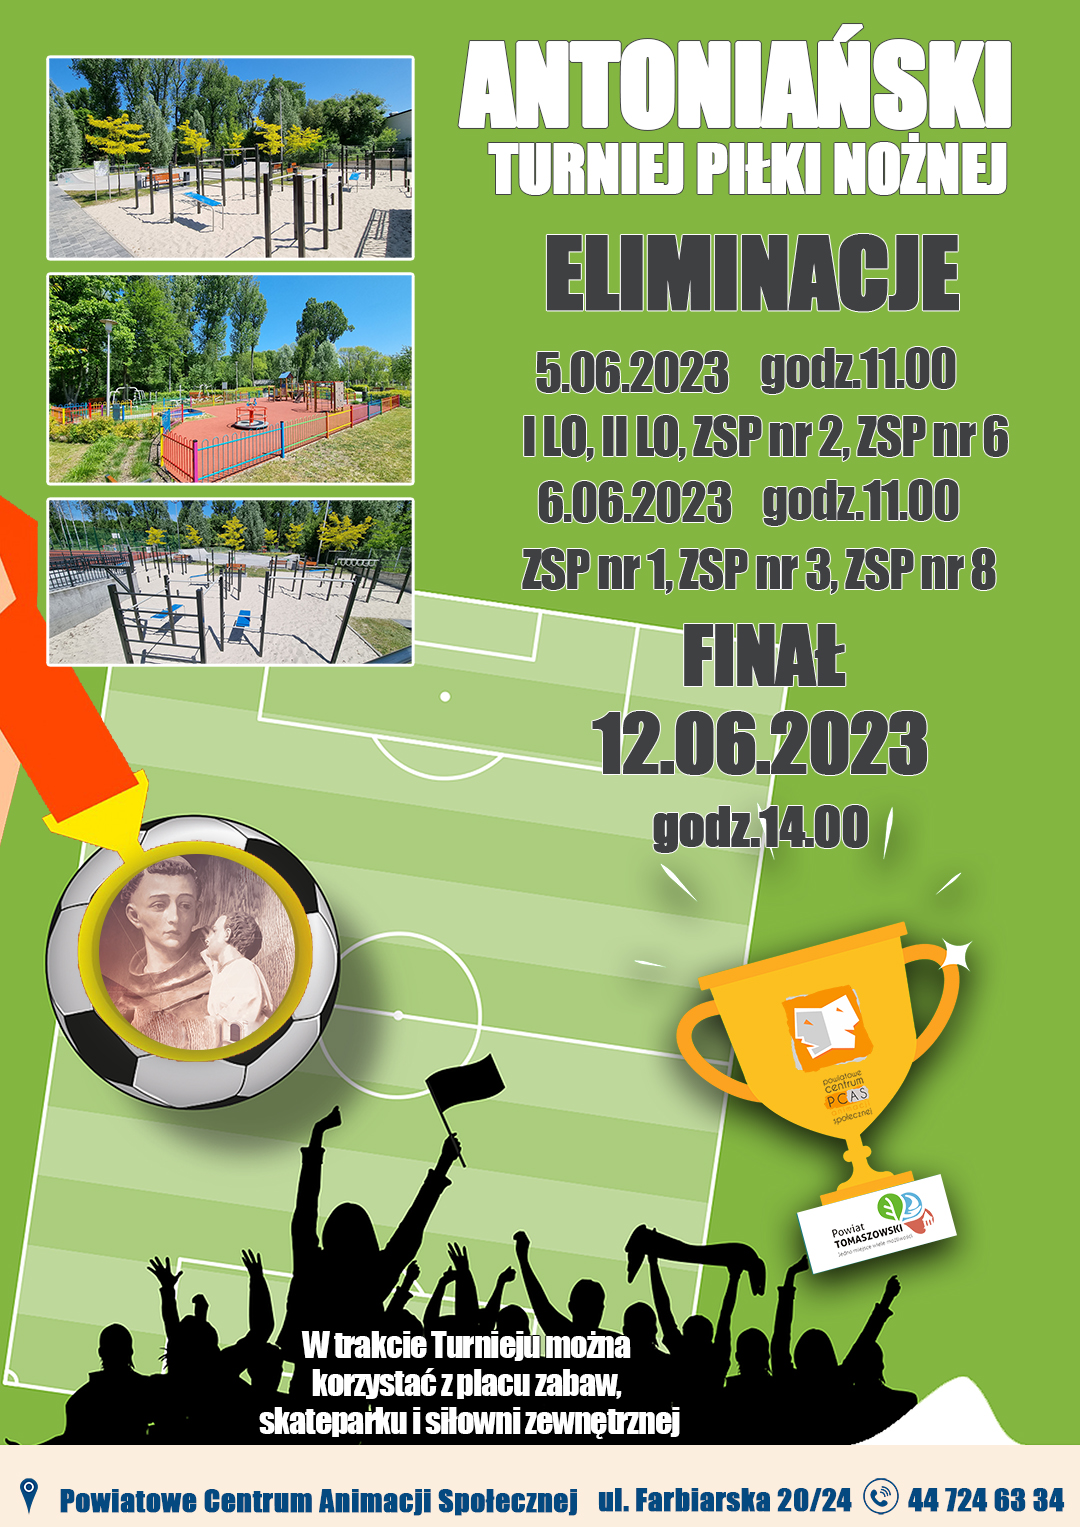 Na zdjęciu: plakat PCAS, dotyczący Antoniański Turniej Piłki Nożnej dla uczniów szkół ponadpodstawowych z powiatu tomaszowskiego, którego finał odbędzie się 12 czerwca 2023 roku, a mecze eliminacyjne 5 i 6 czerwca 2023 roku